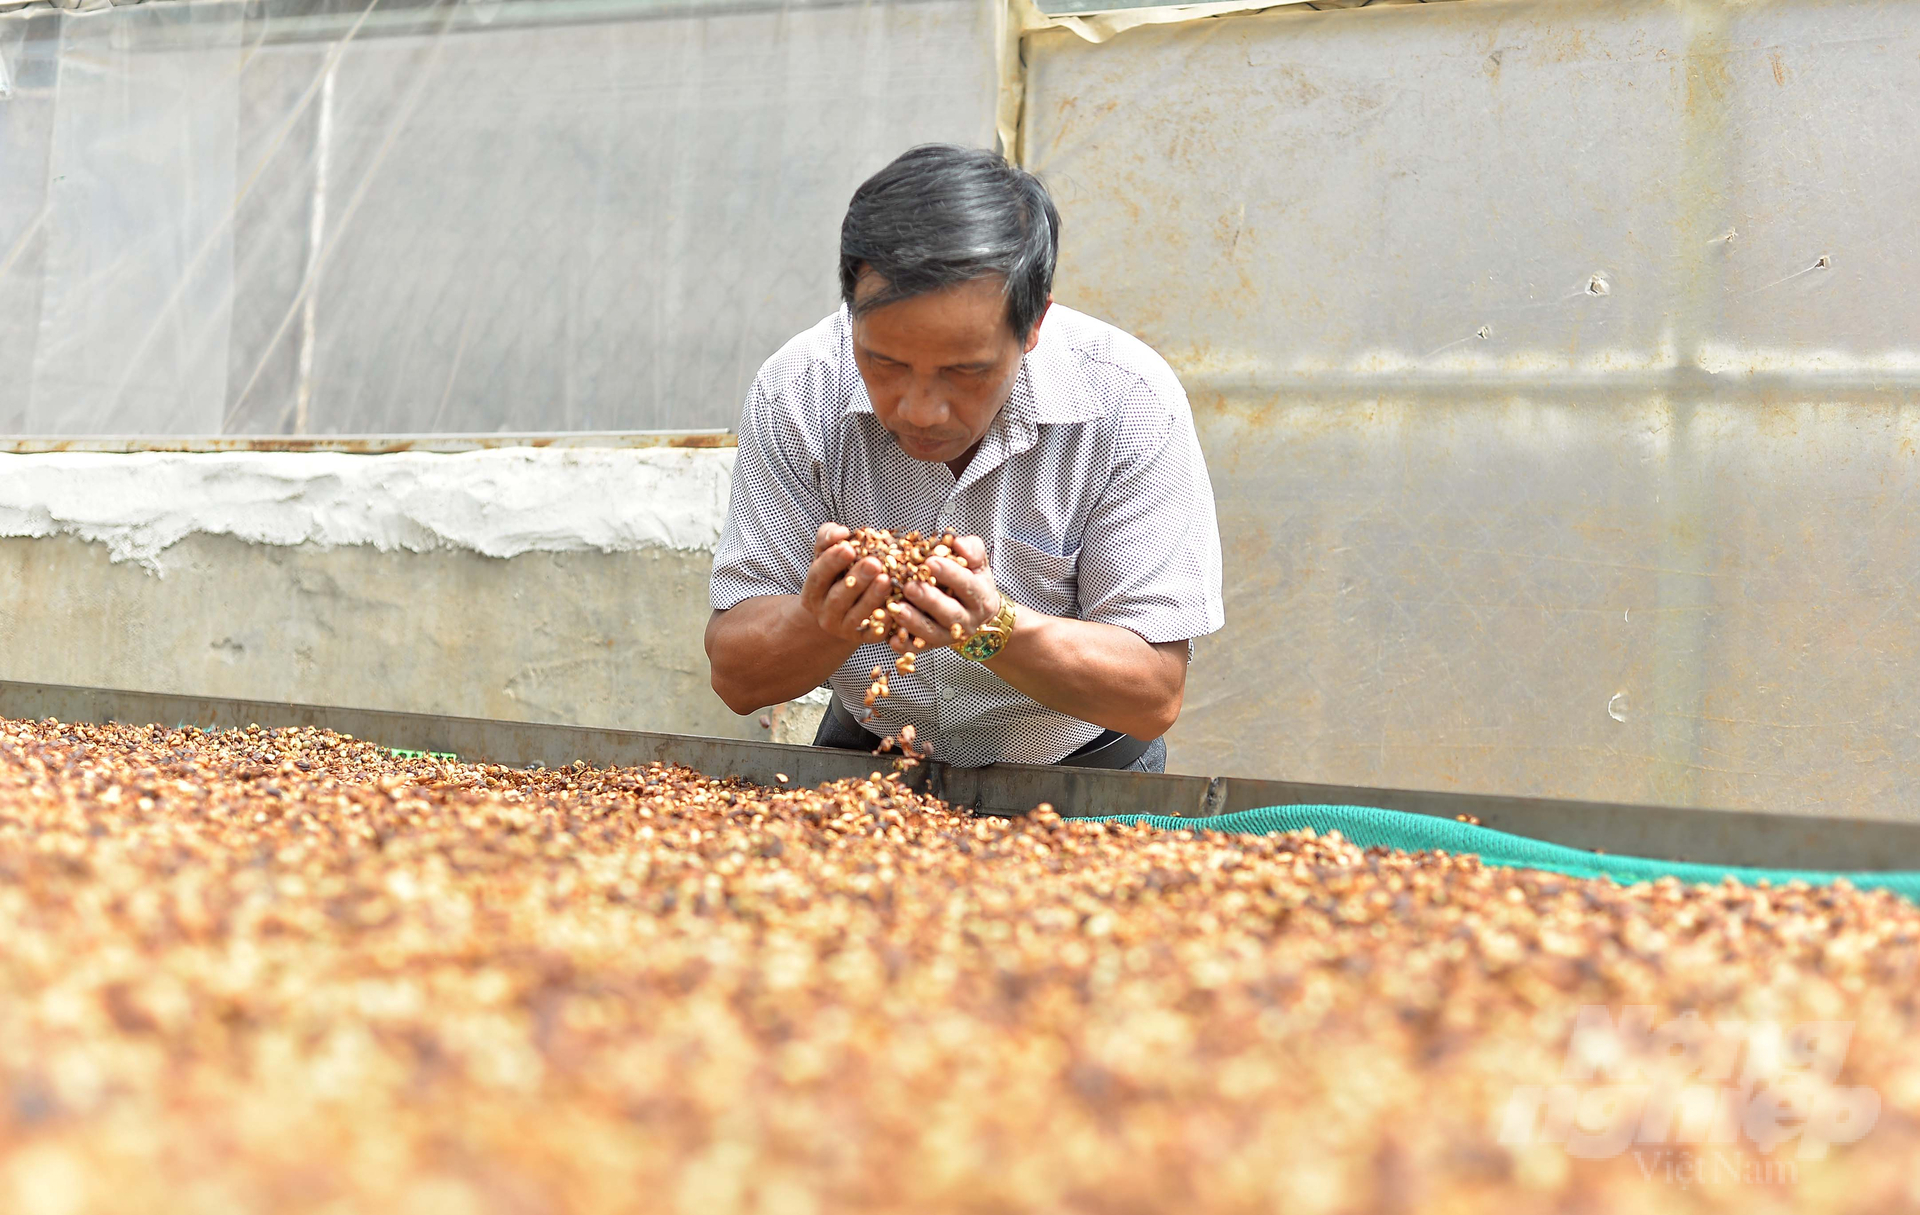 Cà phê robusta được thị trường quan tâm, giá cả được cải thiện giúp nông dân Lâm Đồng cải thiện nguồn thu nhập. Ảnh: Minh Hậu.